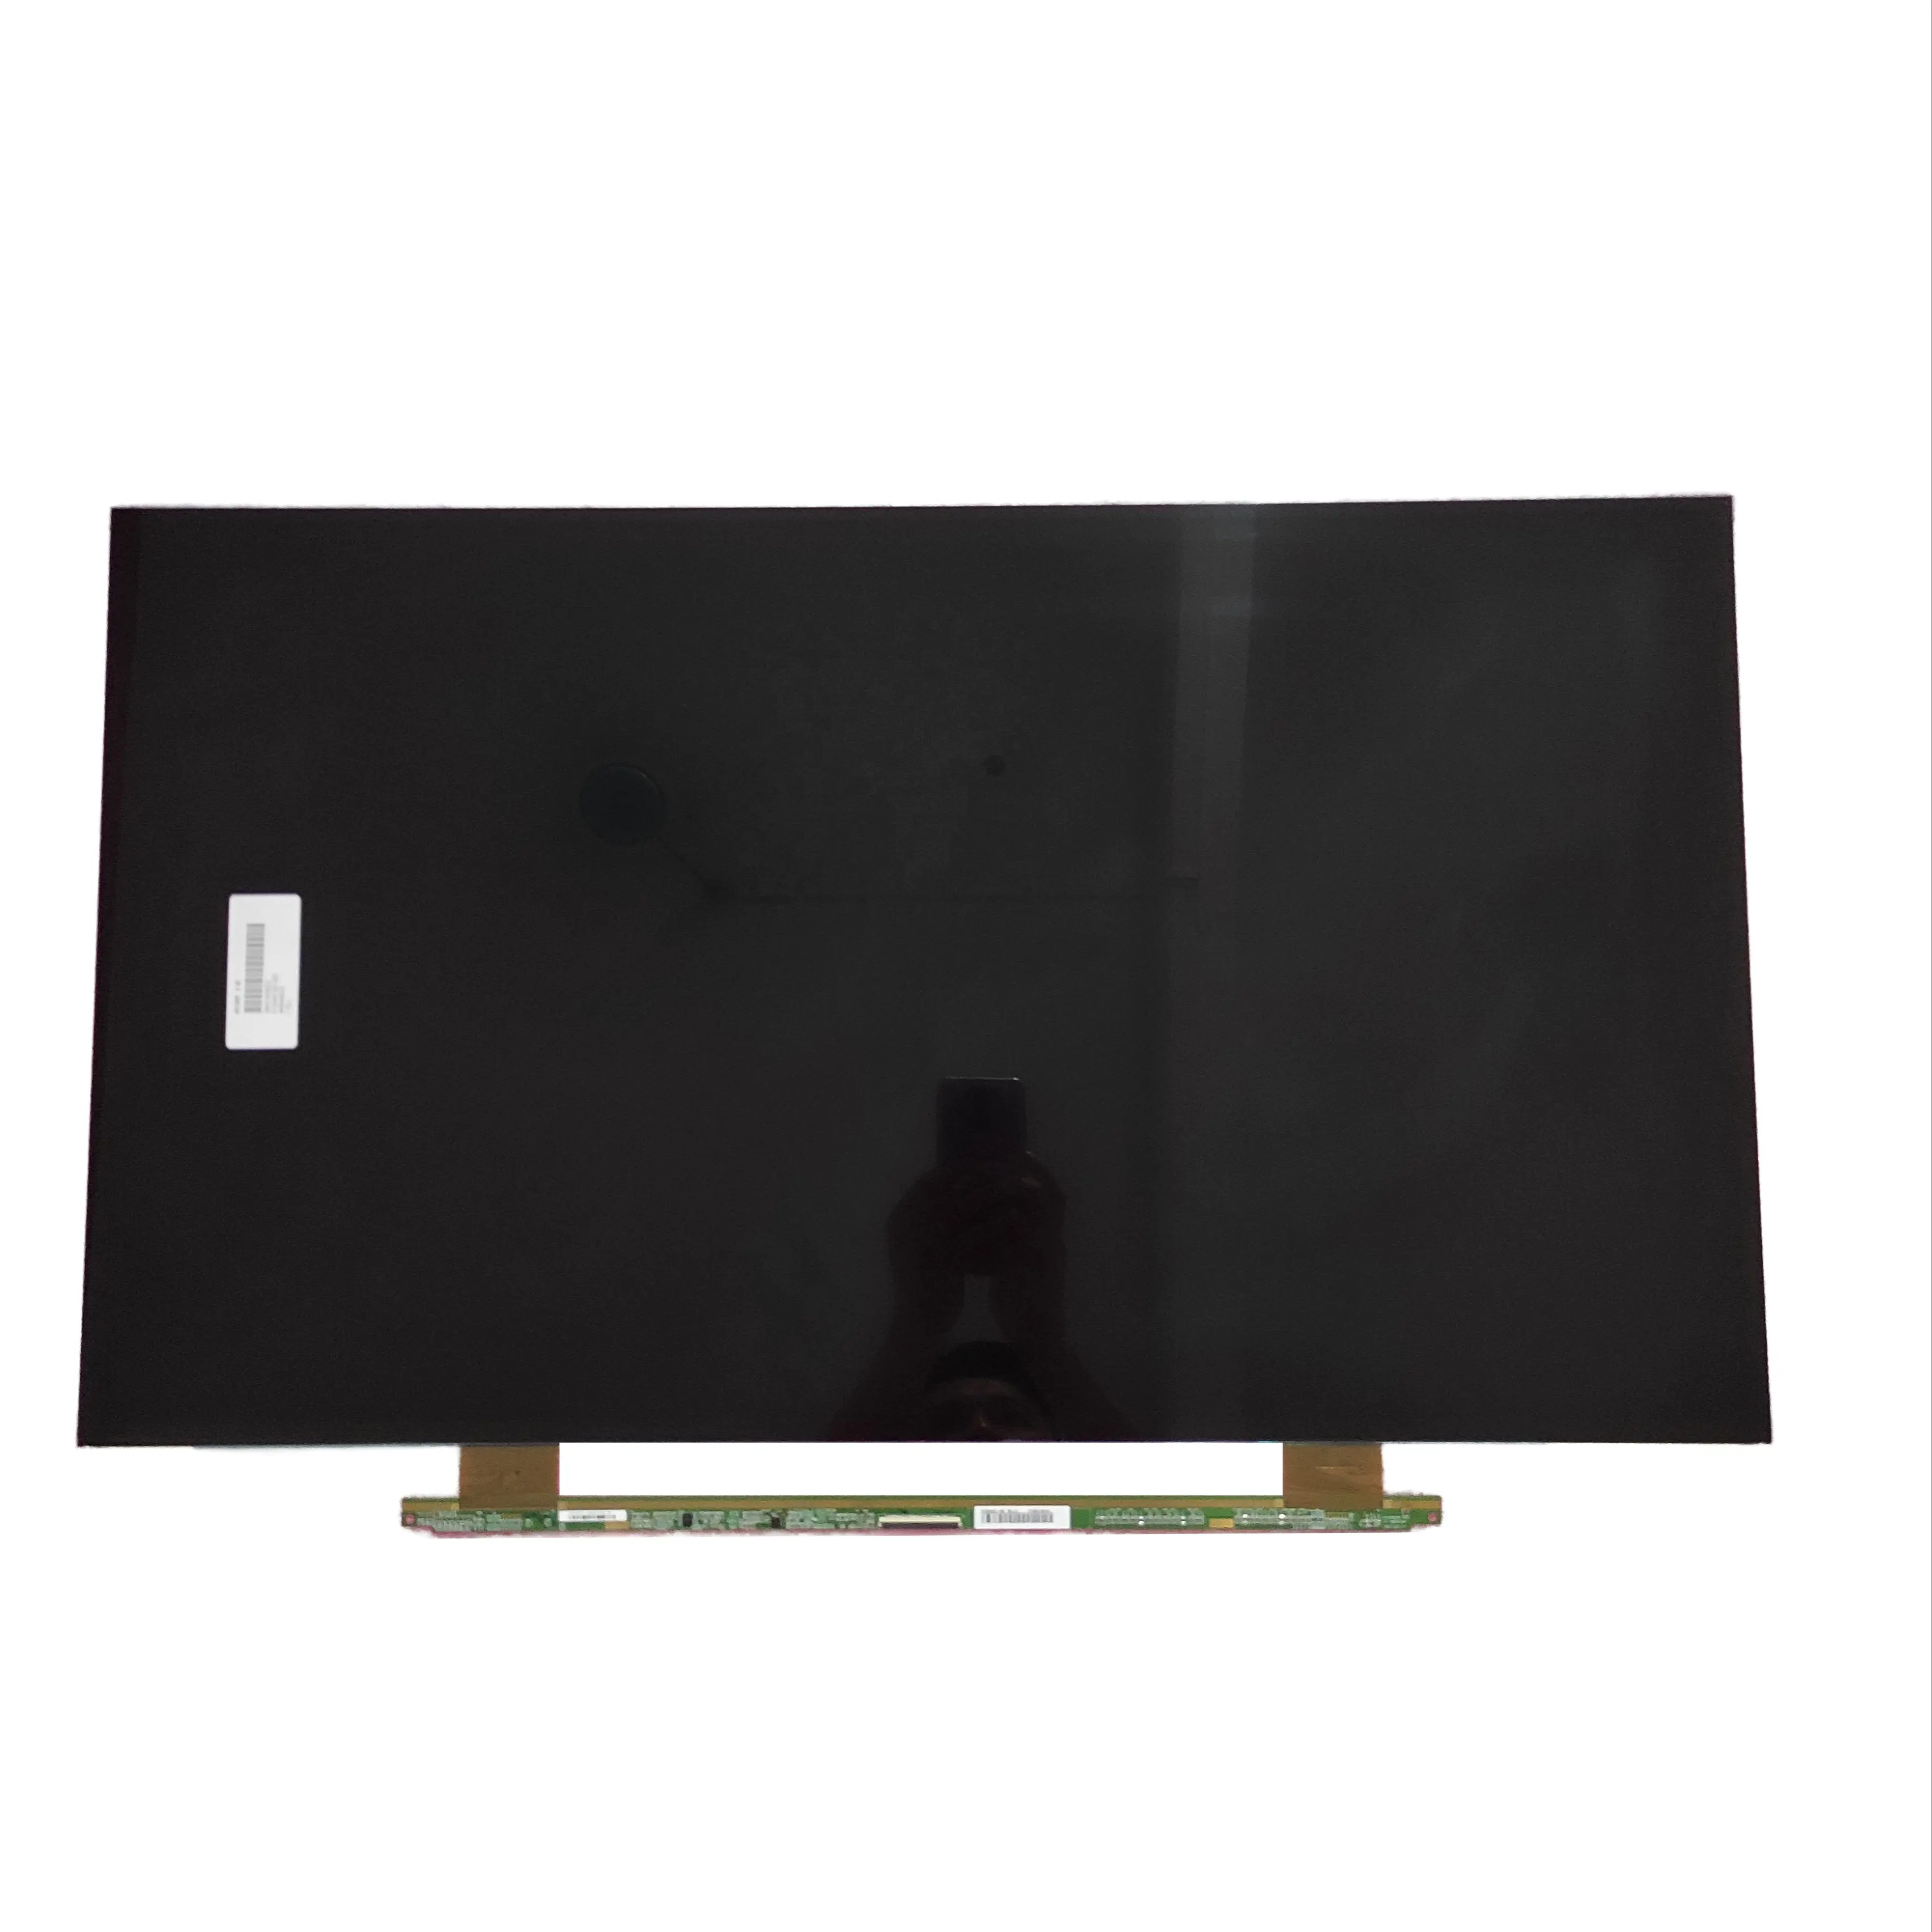 HV320WHB-N56 60 pinos BOE 32 "polegadas LCD LED TFT Display Open Cell TV Screen Peças de reposição do painel para TV Repair